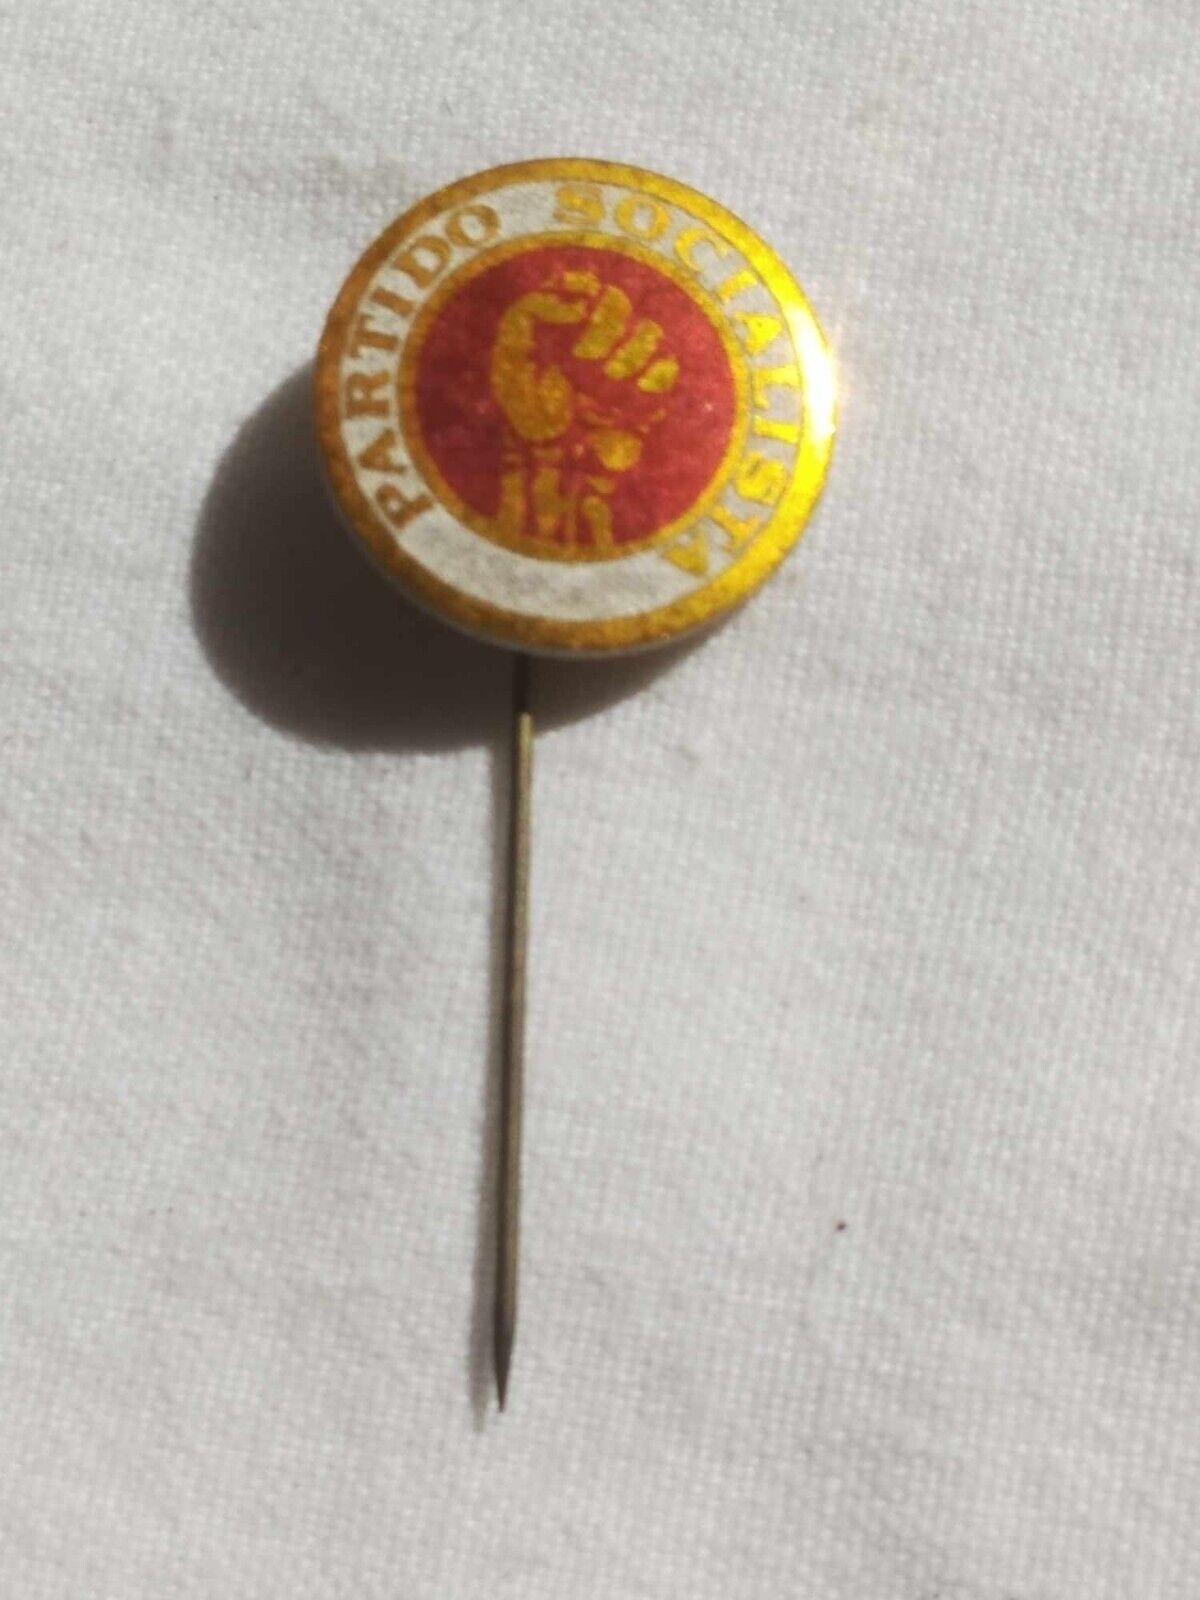 Antique old collectible political pin Partido Socialista PS Portugal